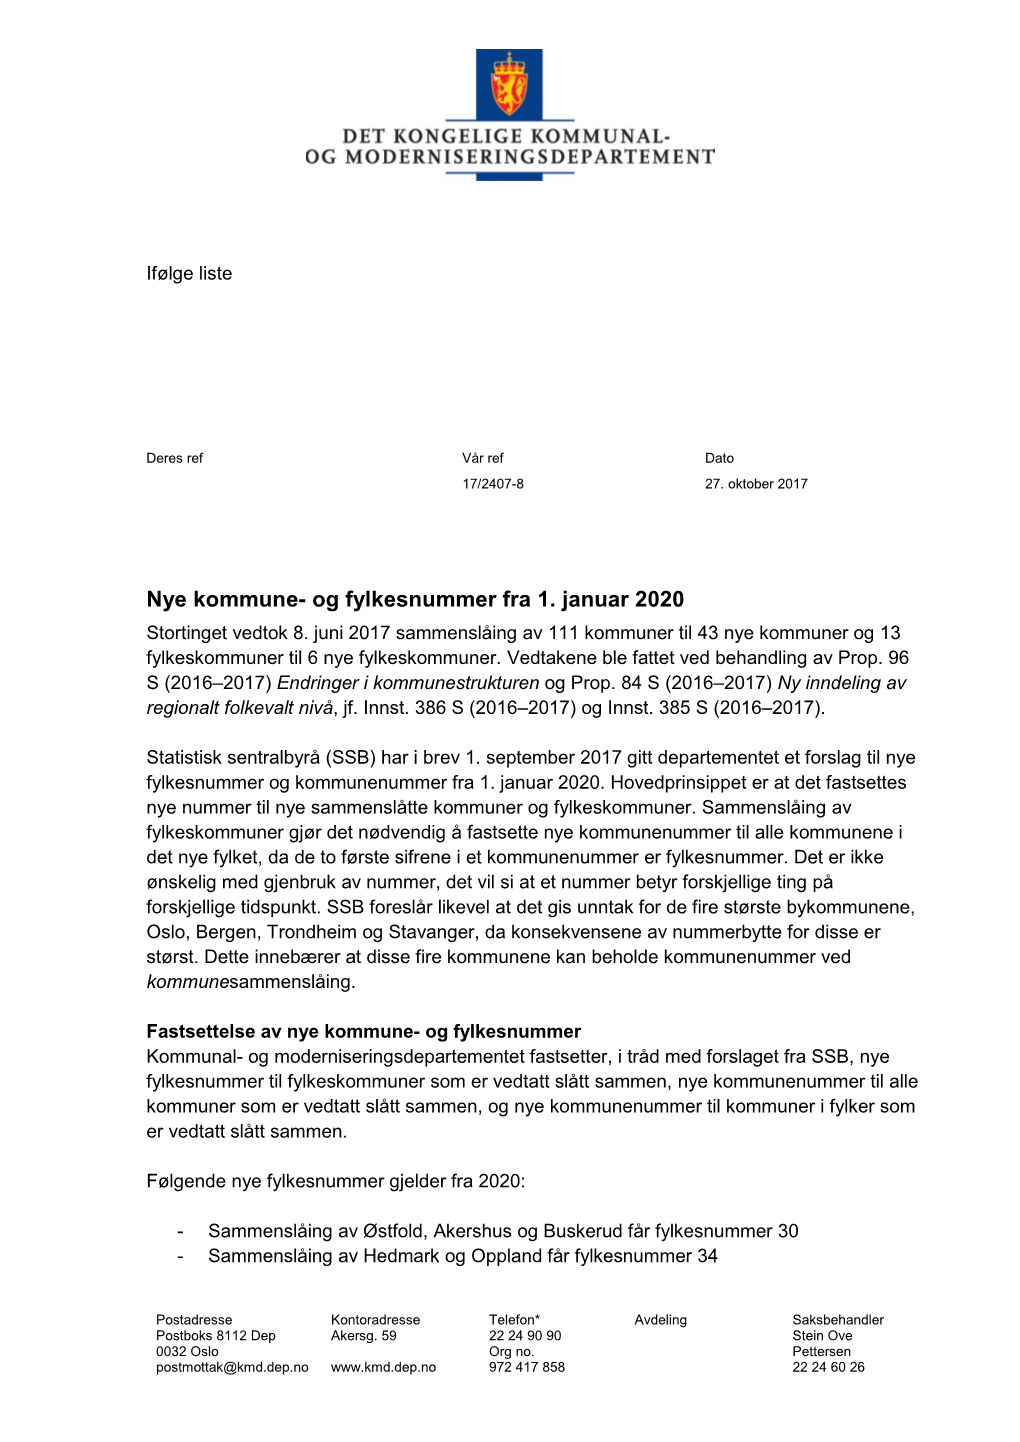 Nye Kommune- Og Fylkesnummer Fra 1. Januar 2020 Stortinget Vedtok 8